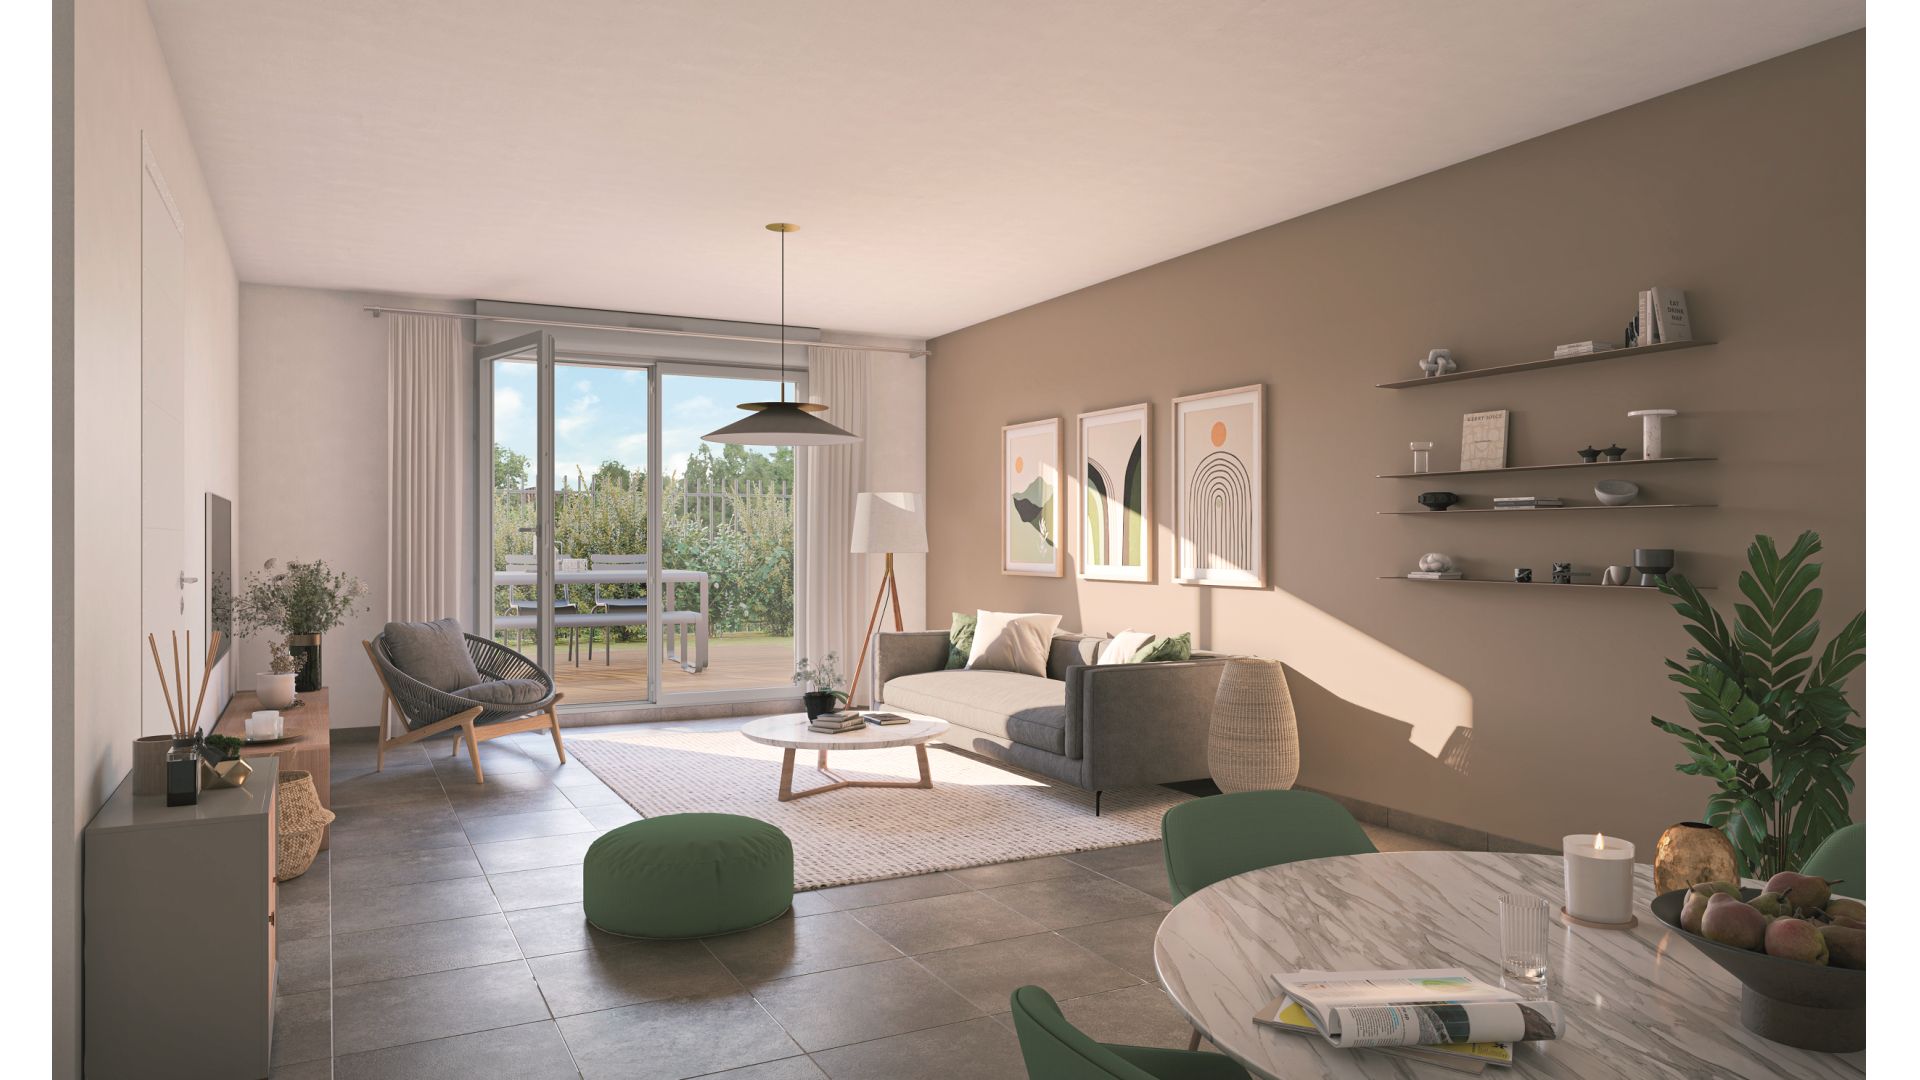 Greencity immobilier - achat appartements neufs du T2 au T5 - Résidence Le Clairbois - 31270 Cugnaux